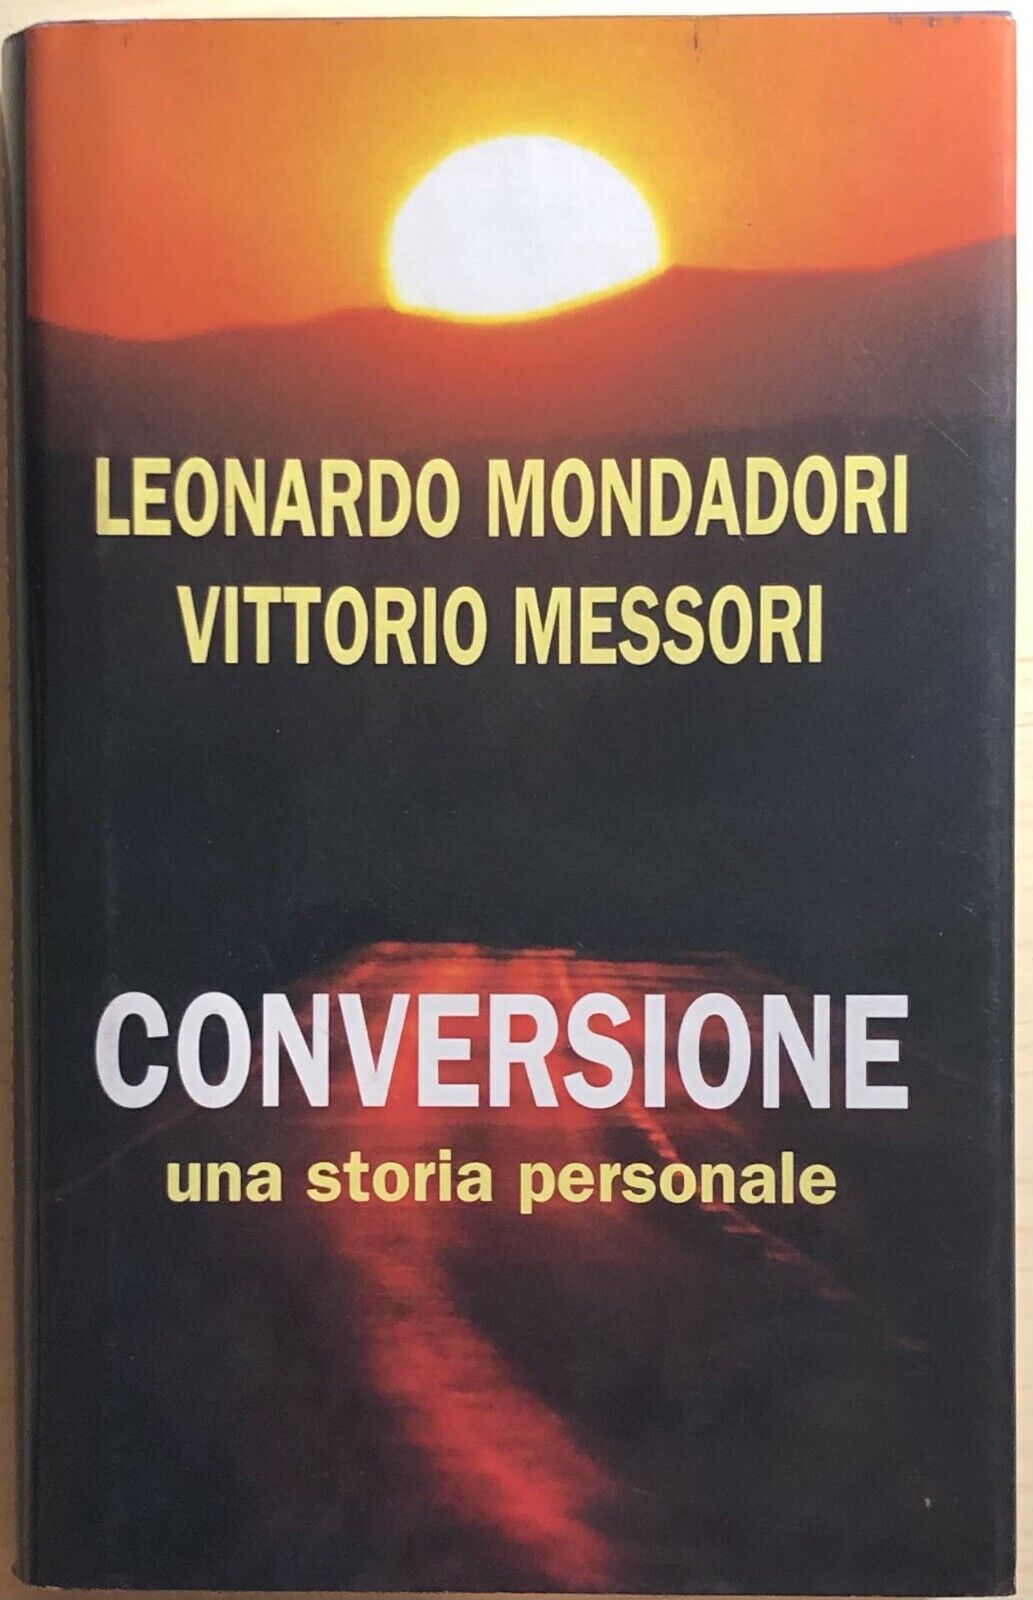 Conversione, una storia personale di Mondadori-Messori, 2002, Edizione Mondolibr